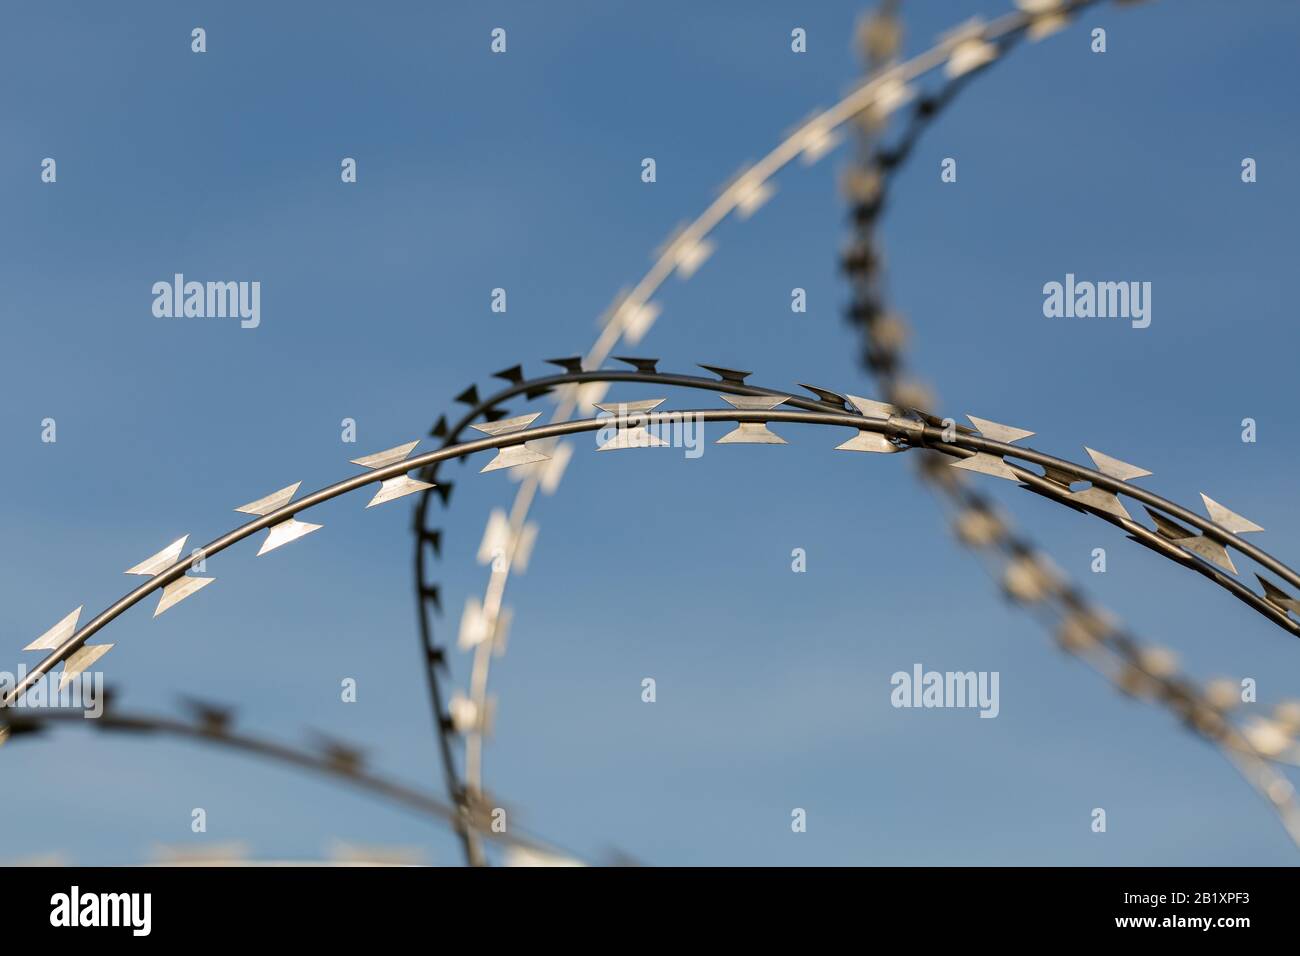 Detail der / isolierten Ansicht auf scharfem, metallischem Rasierdraht / Stacheldraht. Blauer Himmel im Hintergrund. Symbol für Grenze, Migration einschränken, Gefängnis. Stockfoto